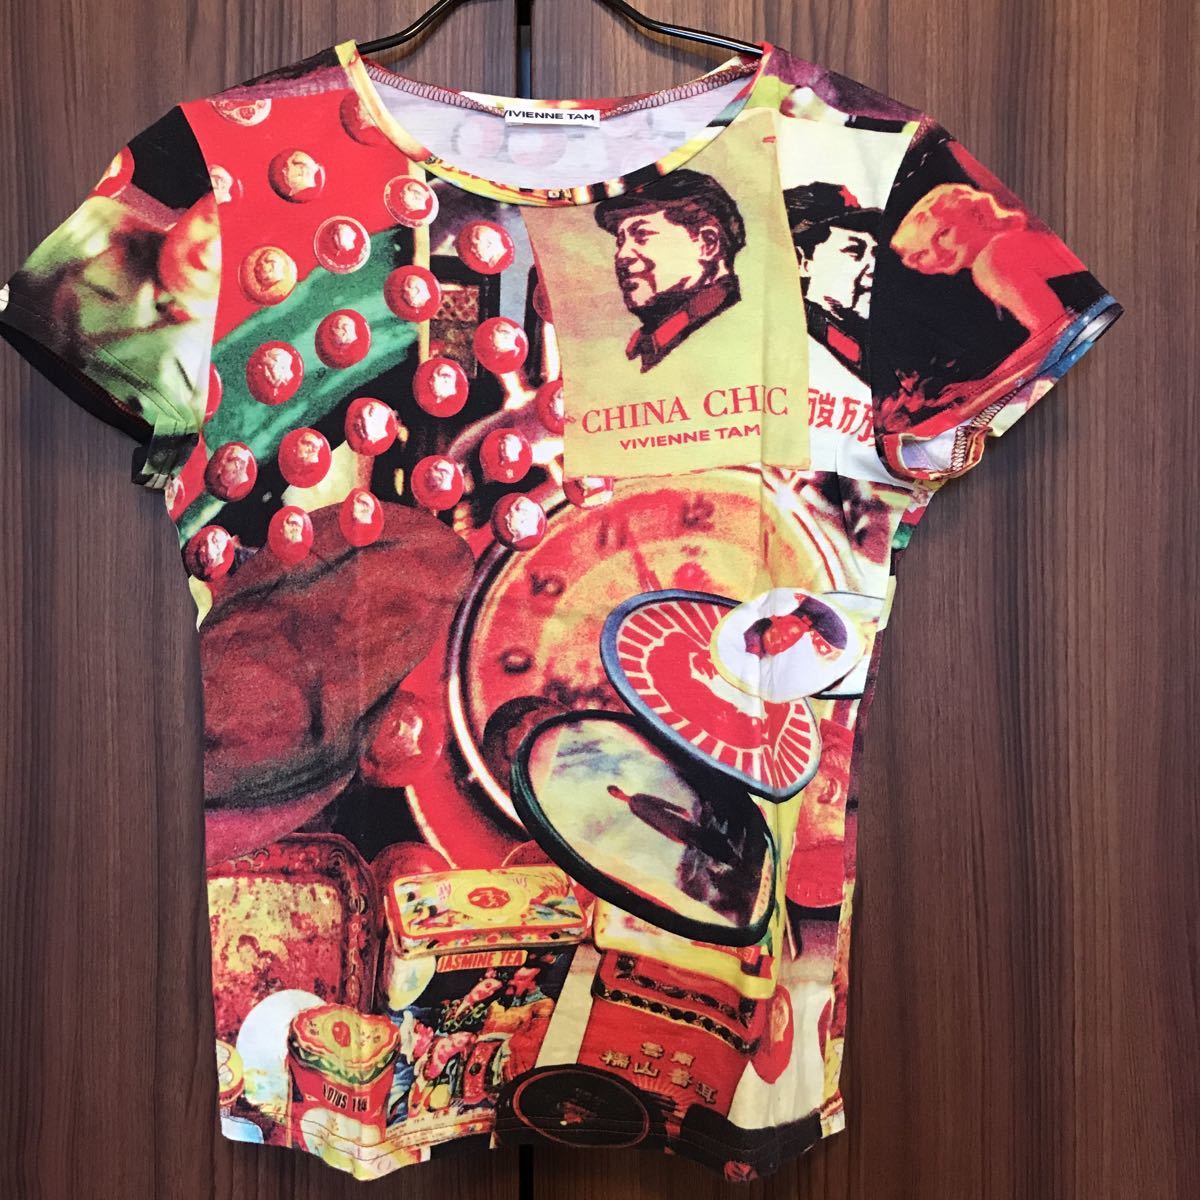 ヴィヴィアンタム VIVIENNE TAM レア ヴィンテージ MAO COLLECTION Tシャツ 90's 毛沢東 珍品 アーカイブ CHINA CHIC Vintage T-shirt